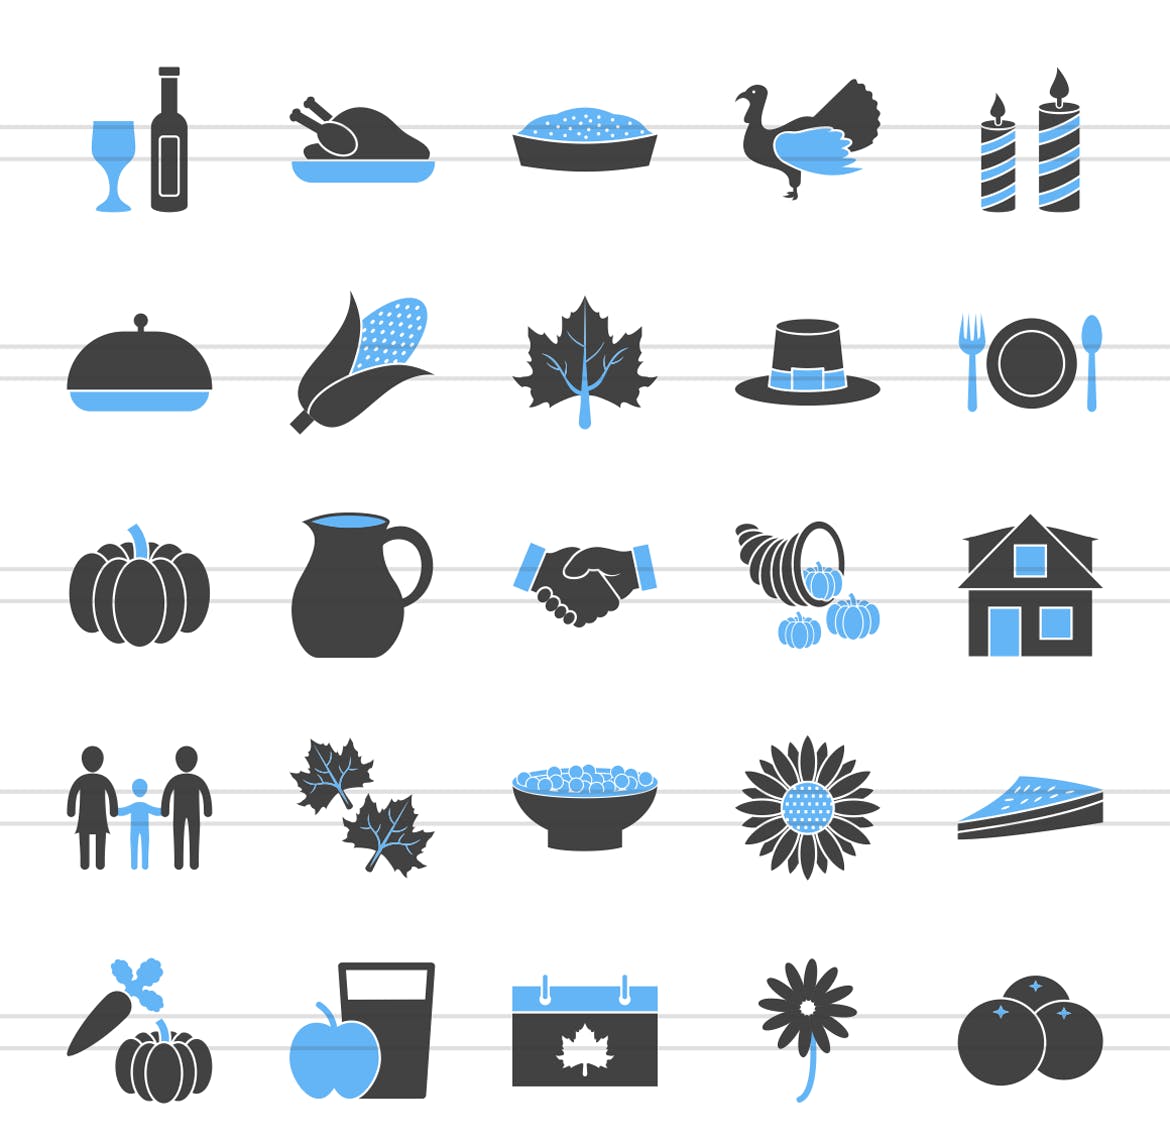 50枚感恩节主题蓝黑配色矢量填充图标 50 Thanksgiving Filled Blue & Black Icons插图(1)